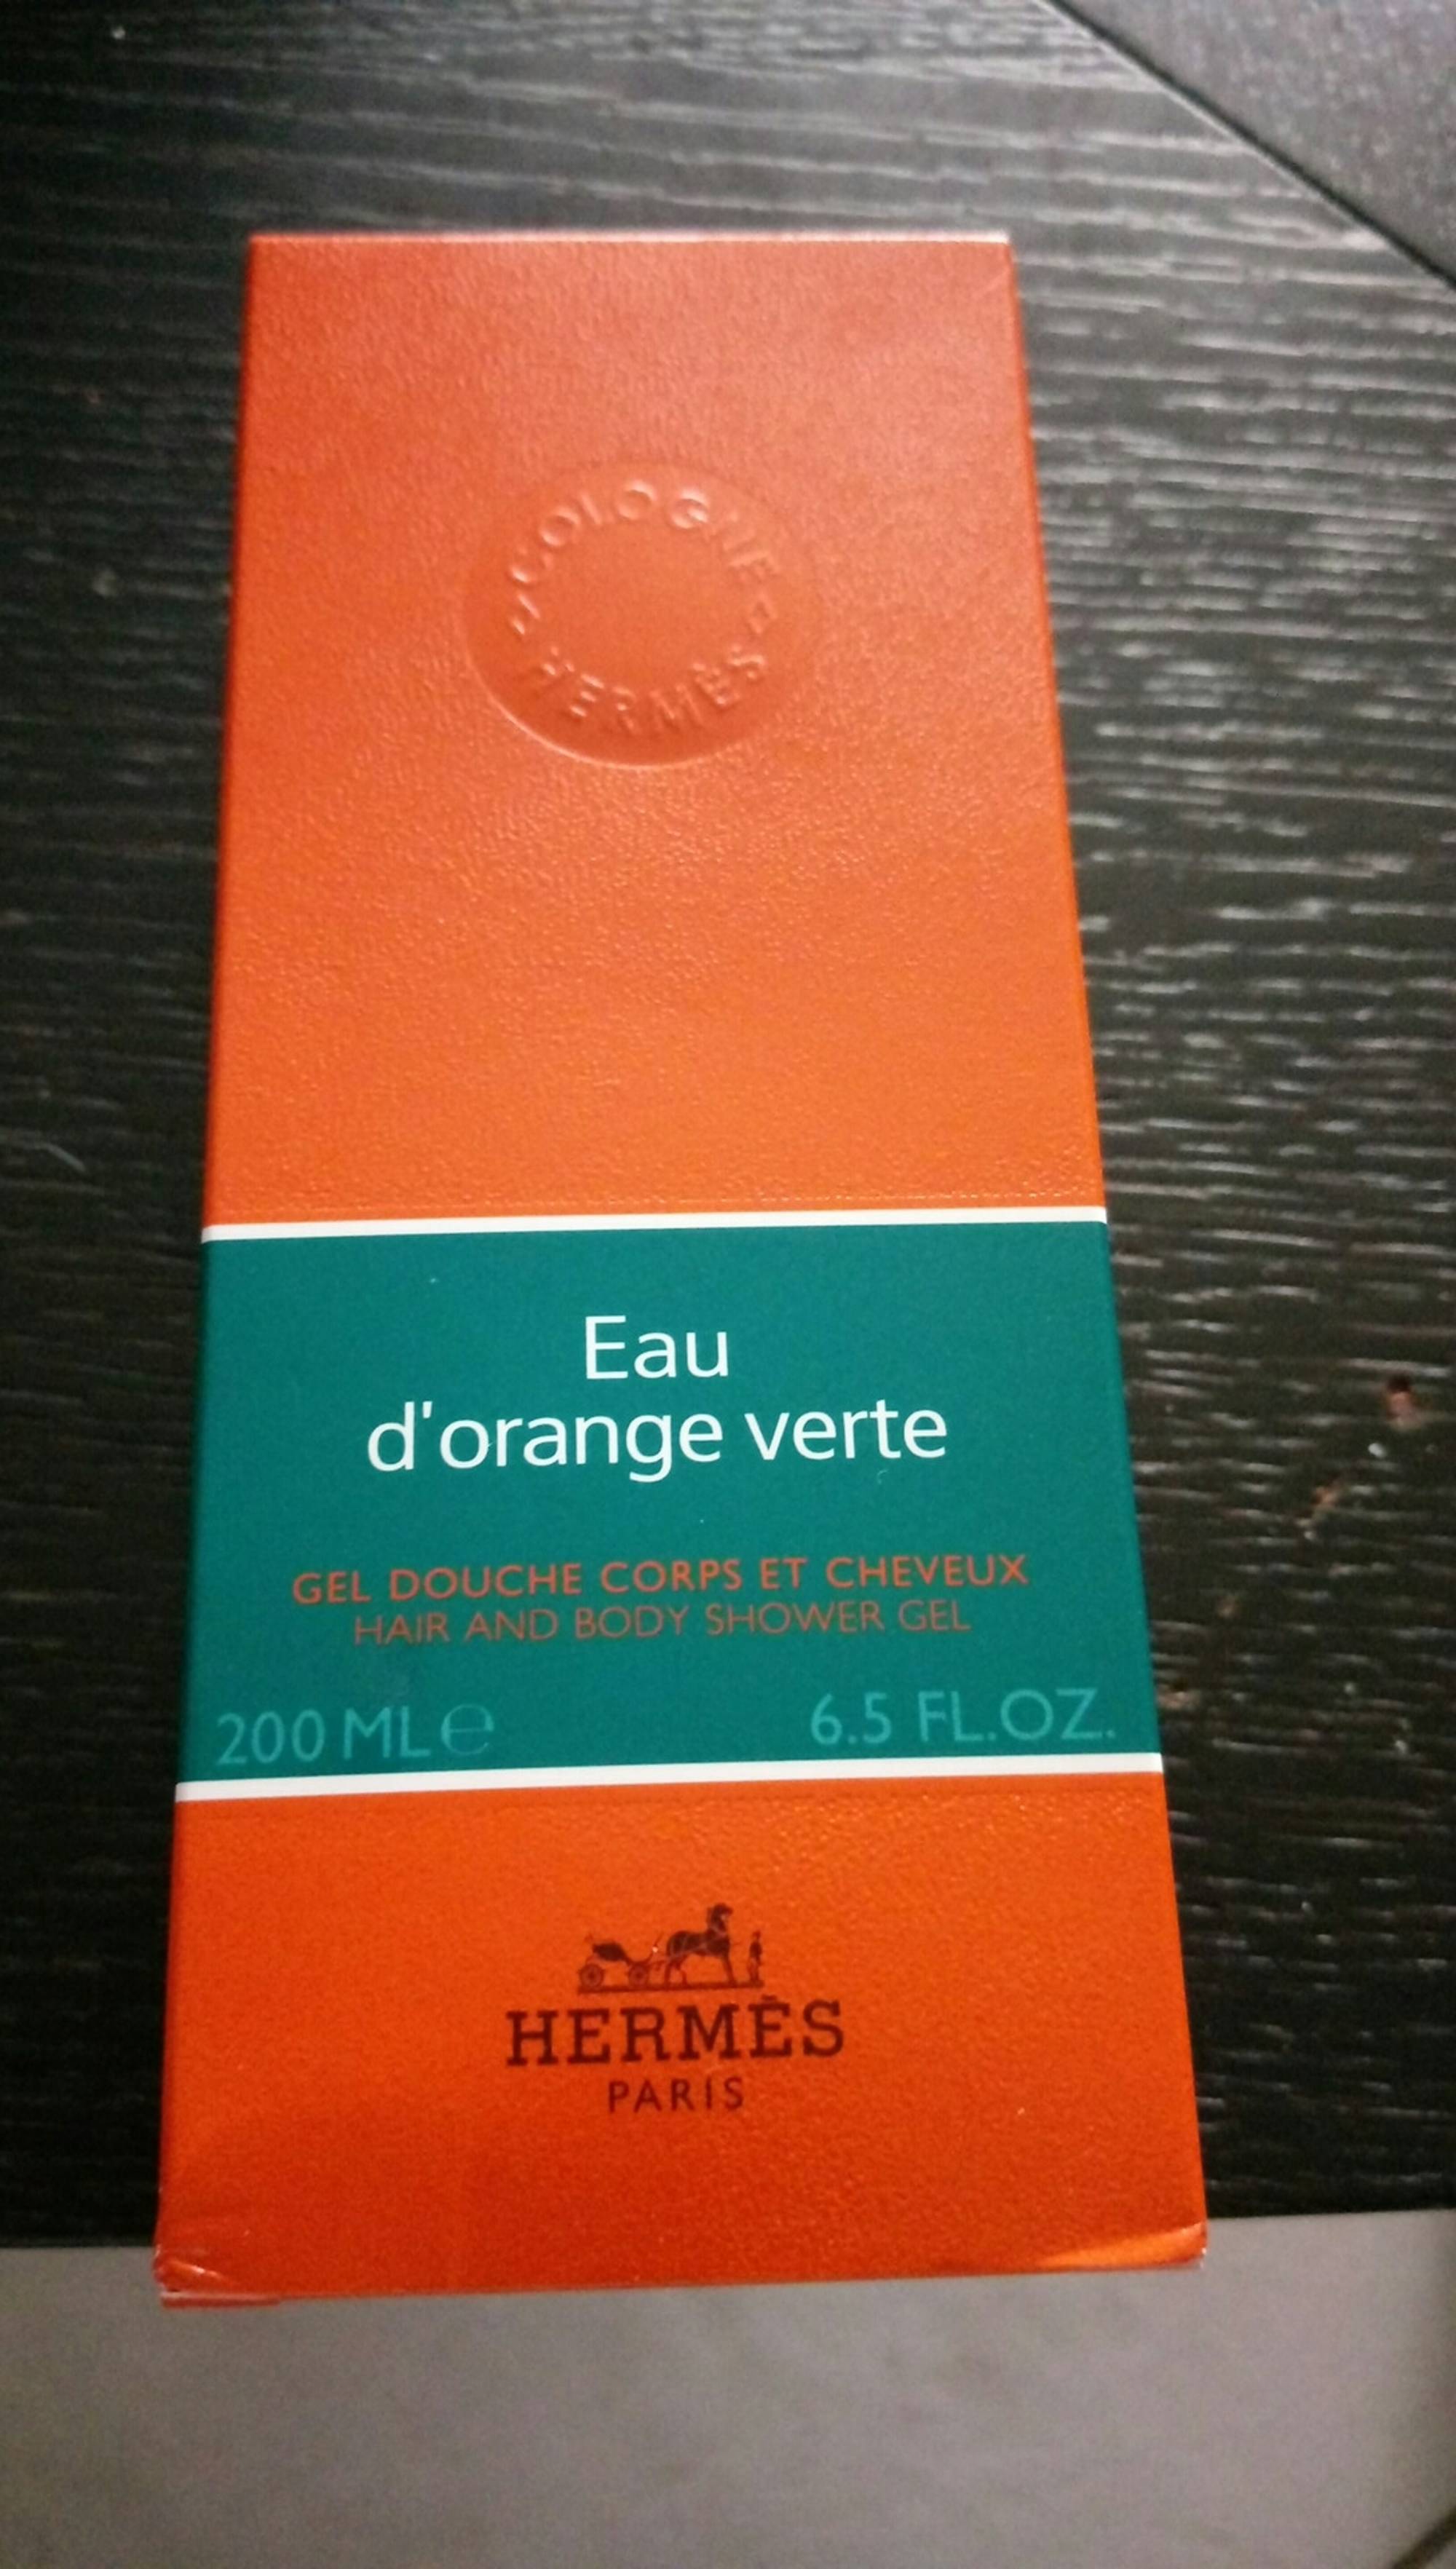 HERMÈS PARIS - Eau d'orange verte - Gel douche